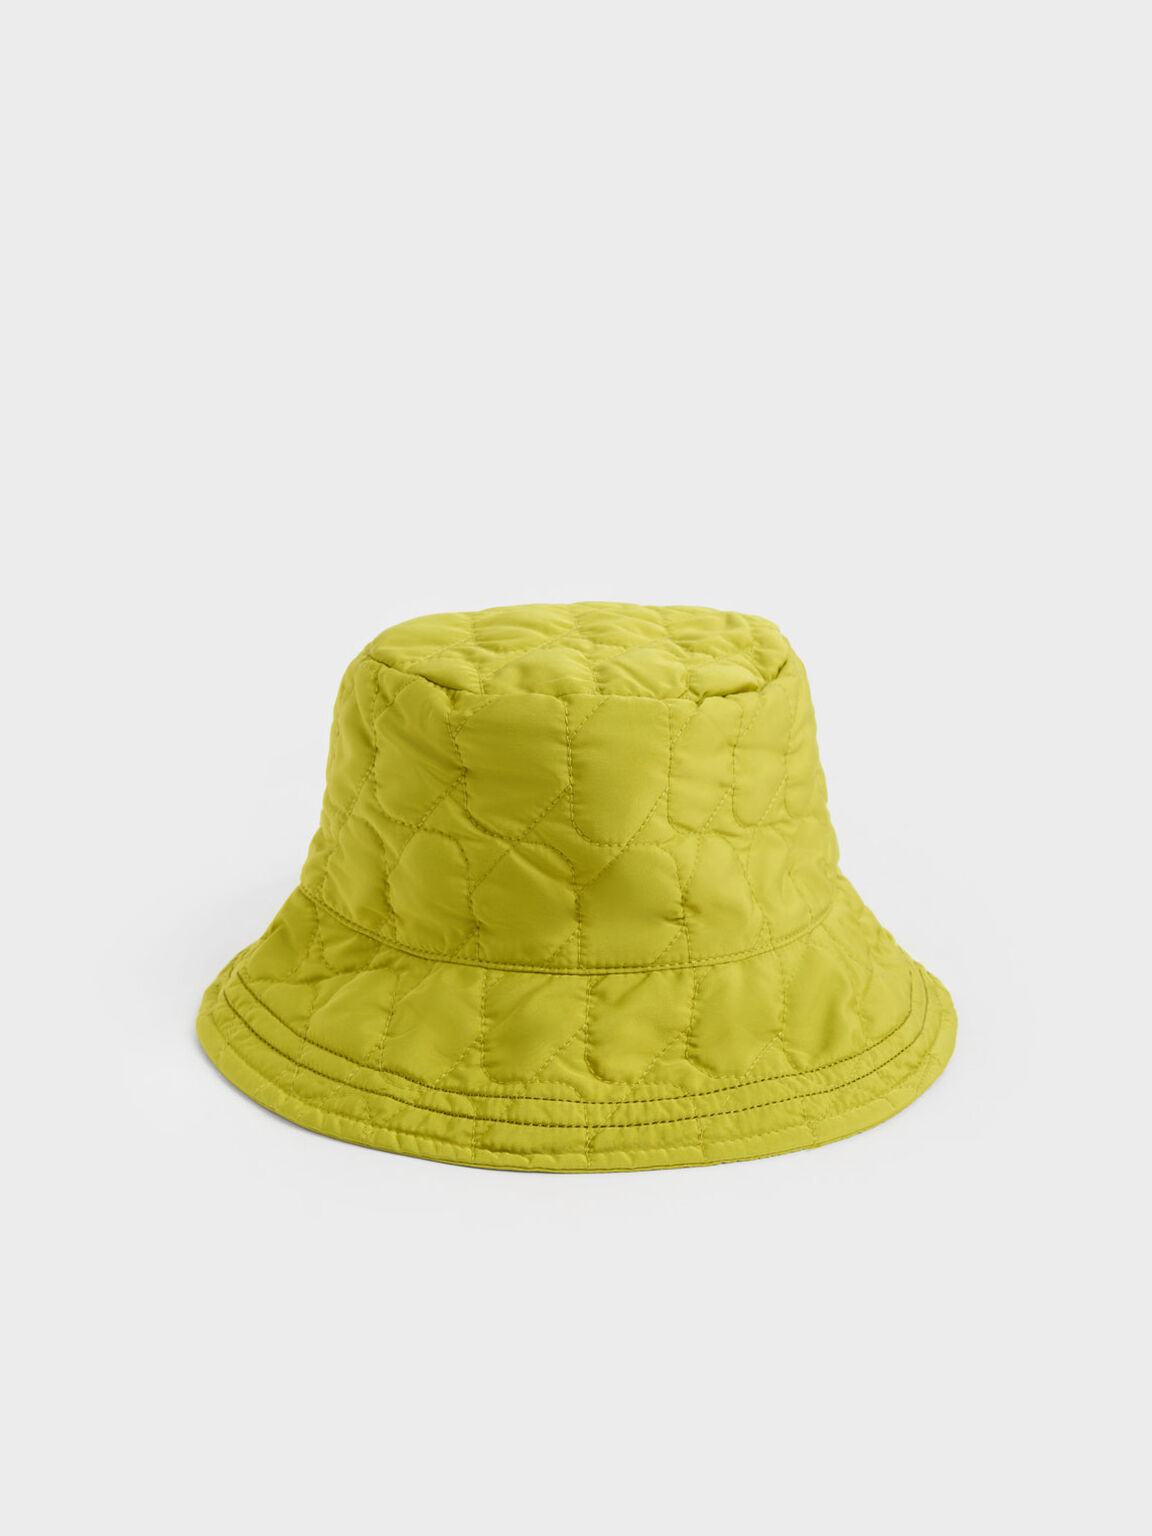 澎澎衍縫漁夫帽, 萊姆色, hi-res